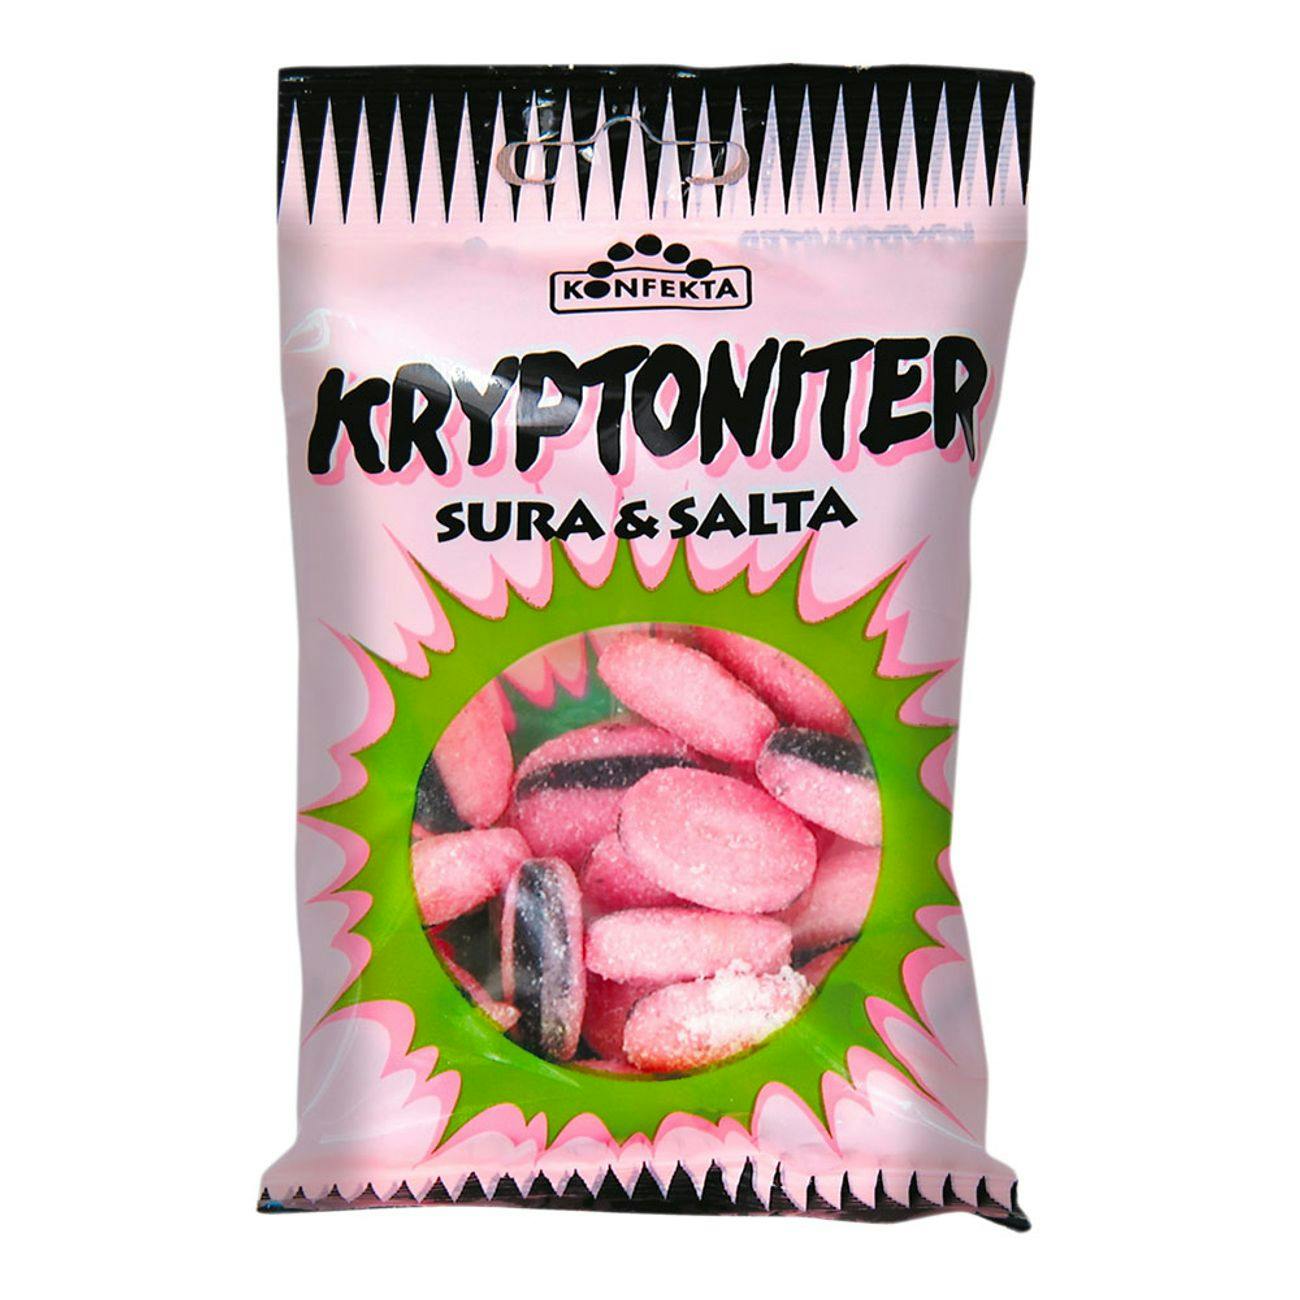 Konfekta Kryptoniter by Sweet Side of Sweden